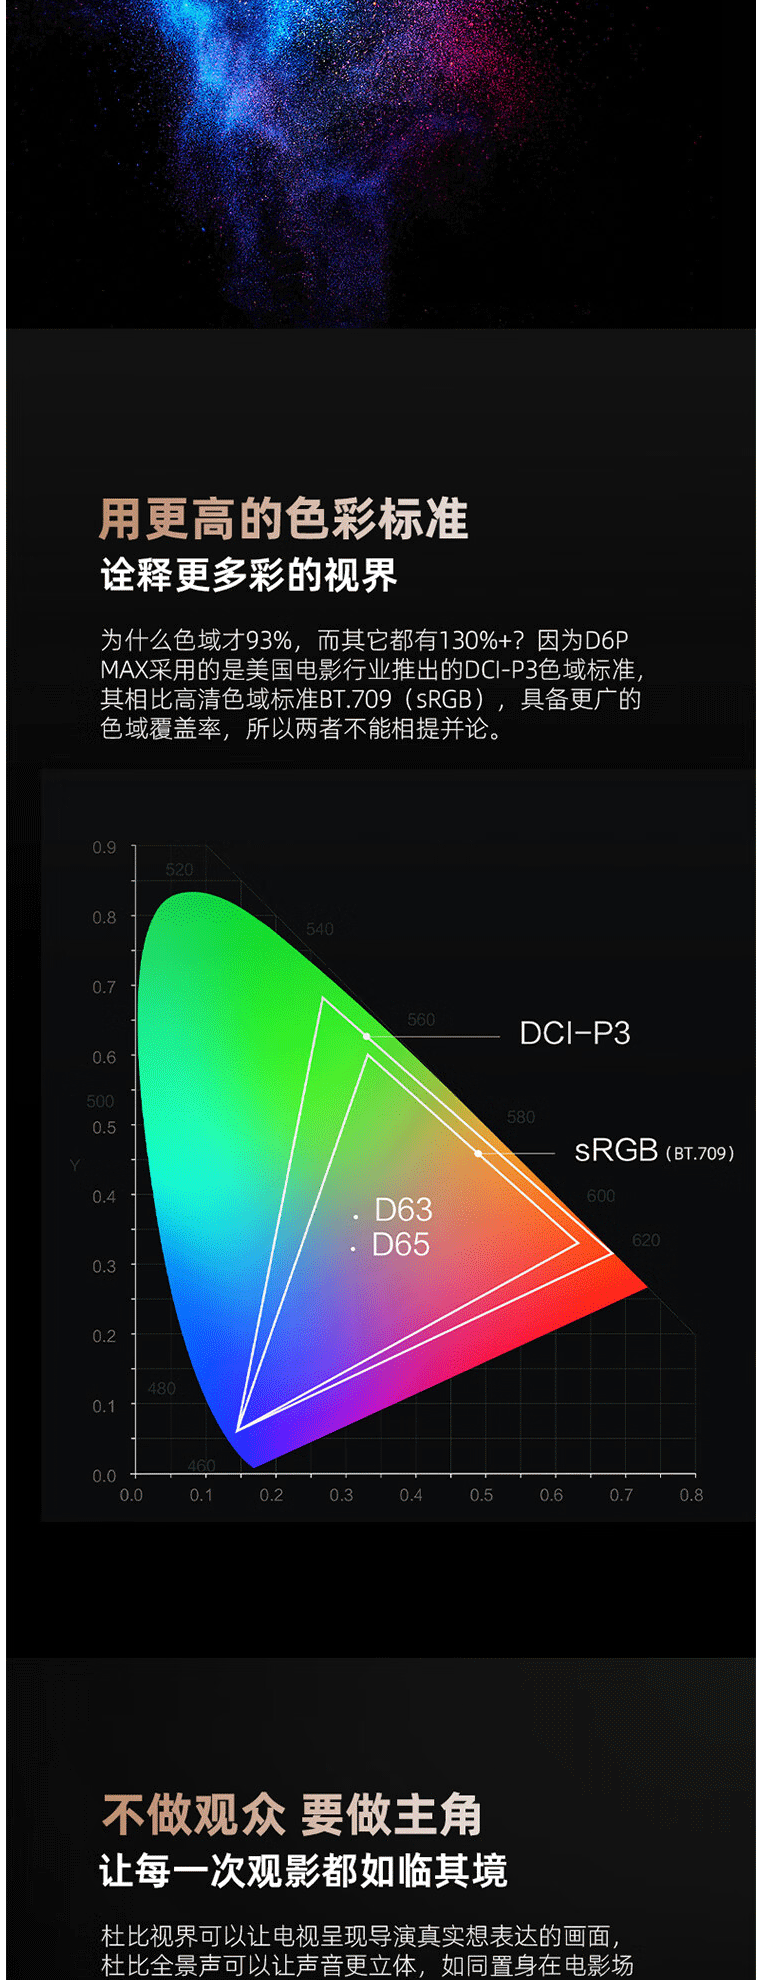 长虹/CHANGHONG 长虹电视55D6P MAX 55英寸游戏电视